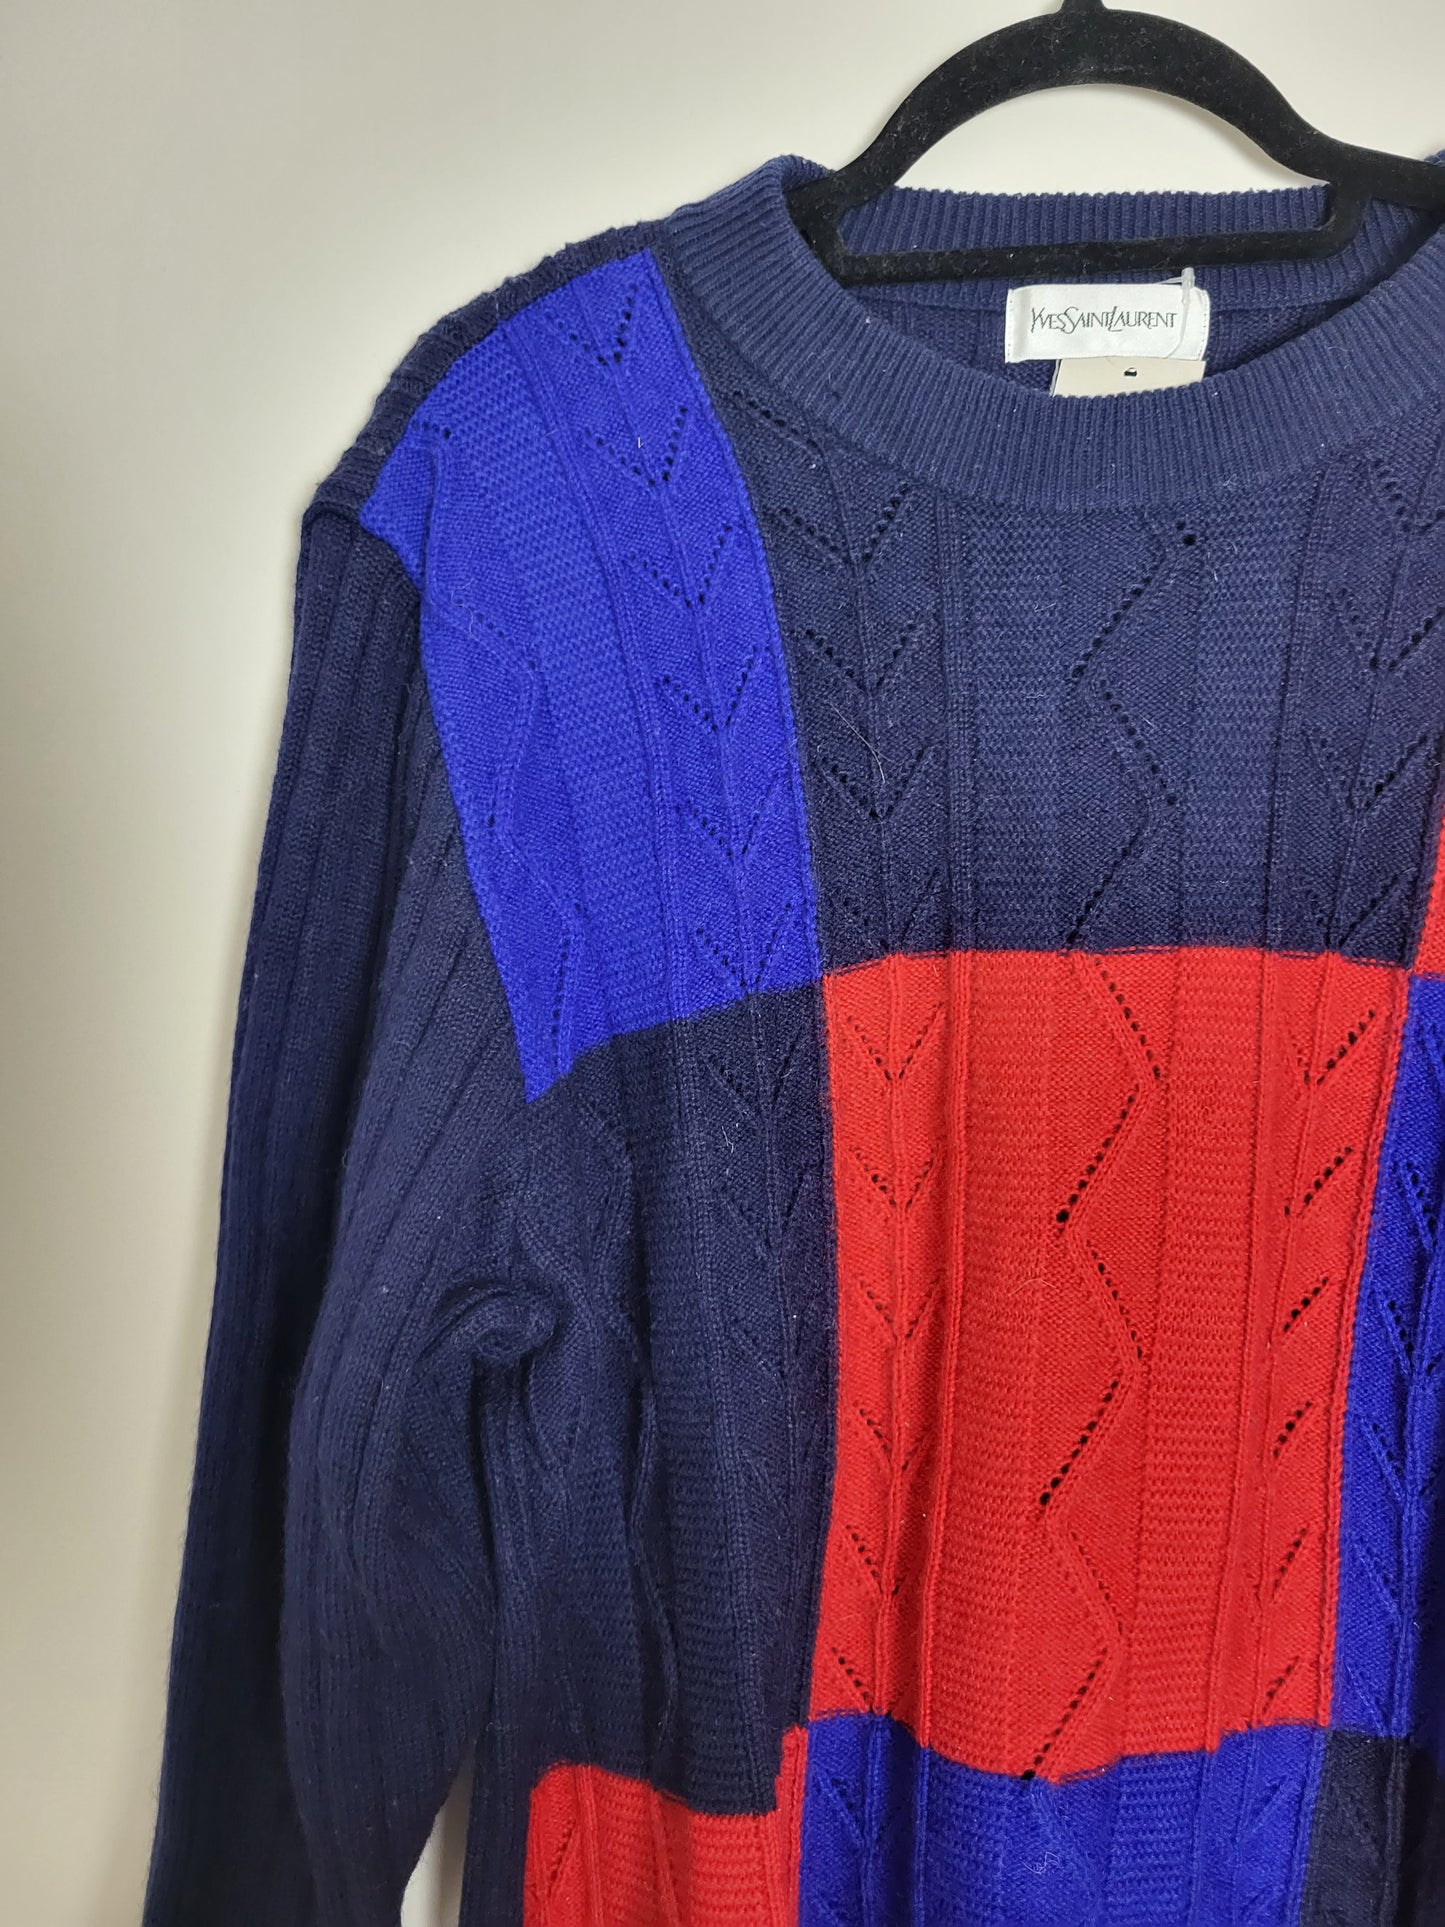 YVES SAINT LAURENT - Vintage Pullover - Muster - Bunt - Herren - XL